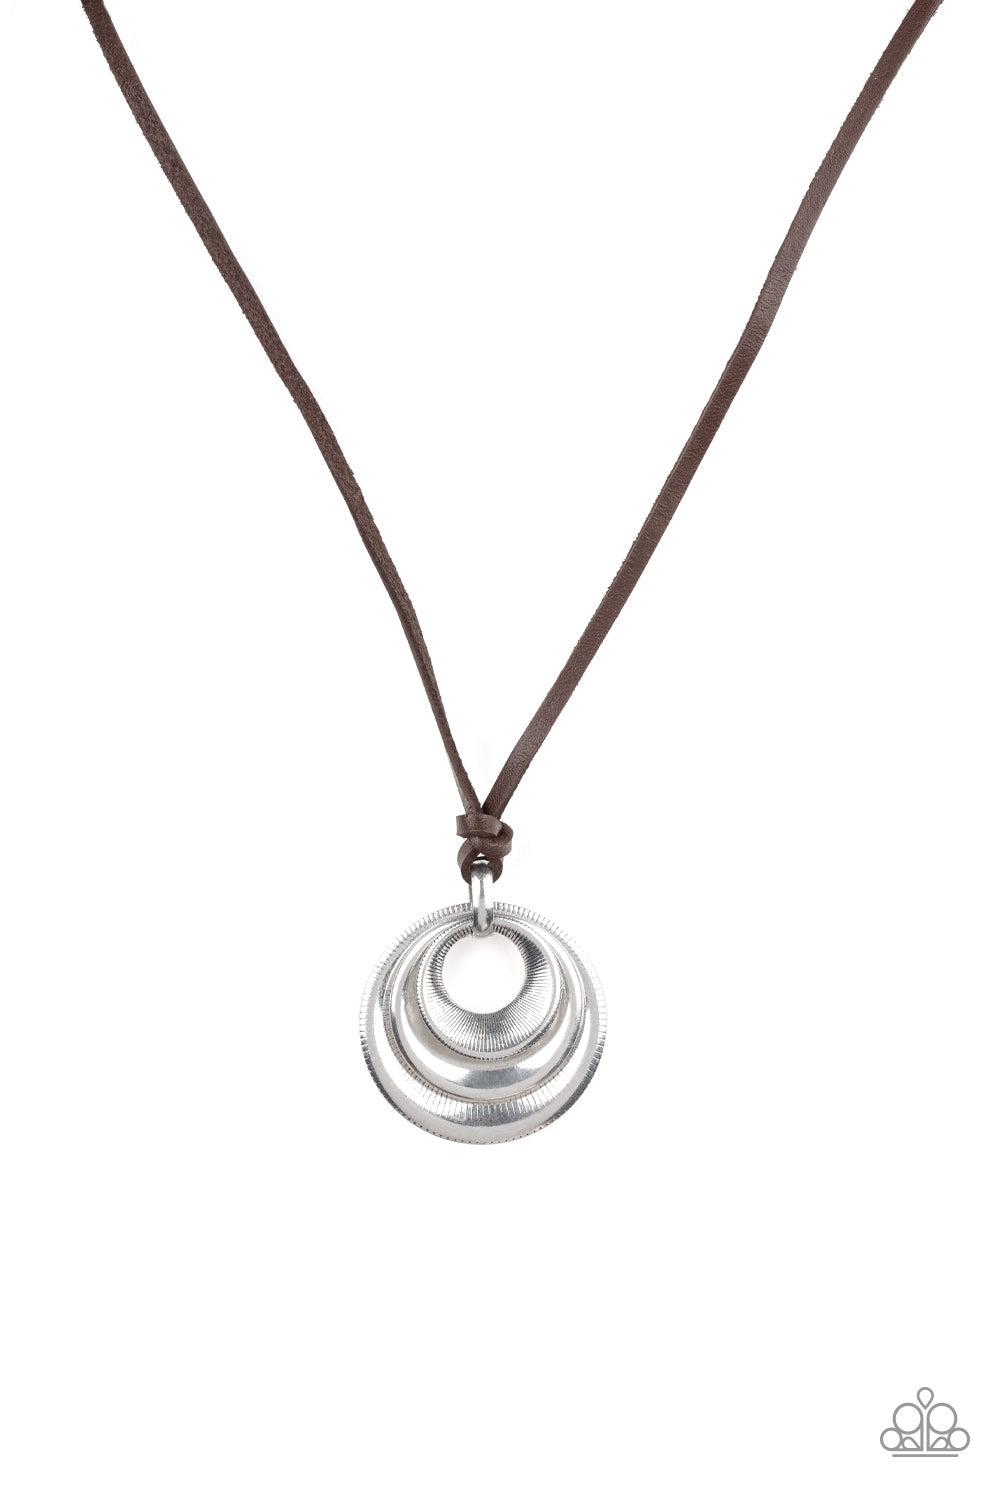 Desert Spiral - Silver Urban Necklace